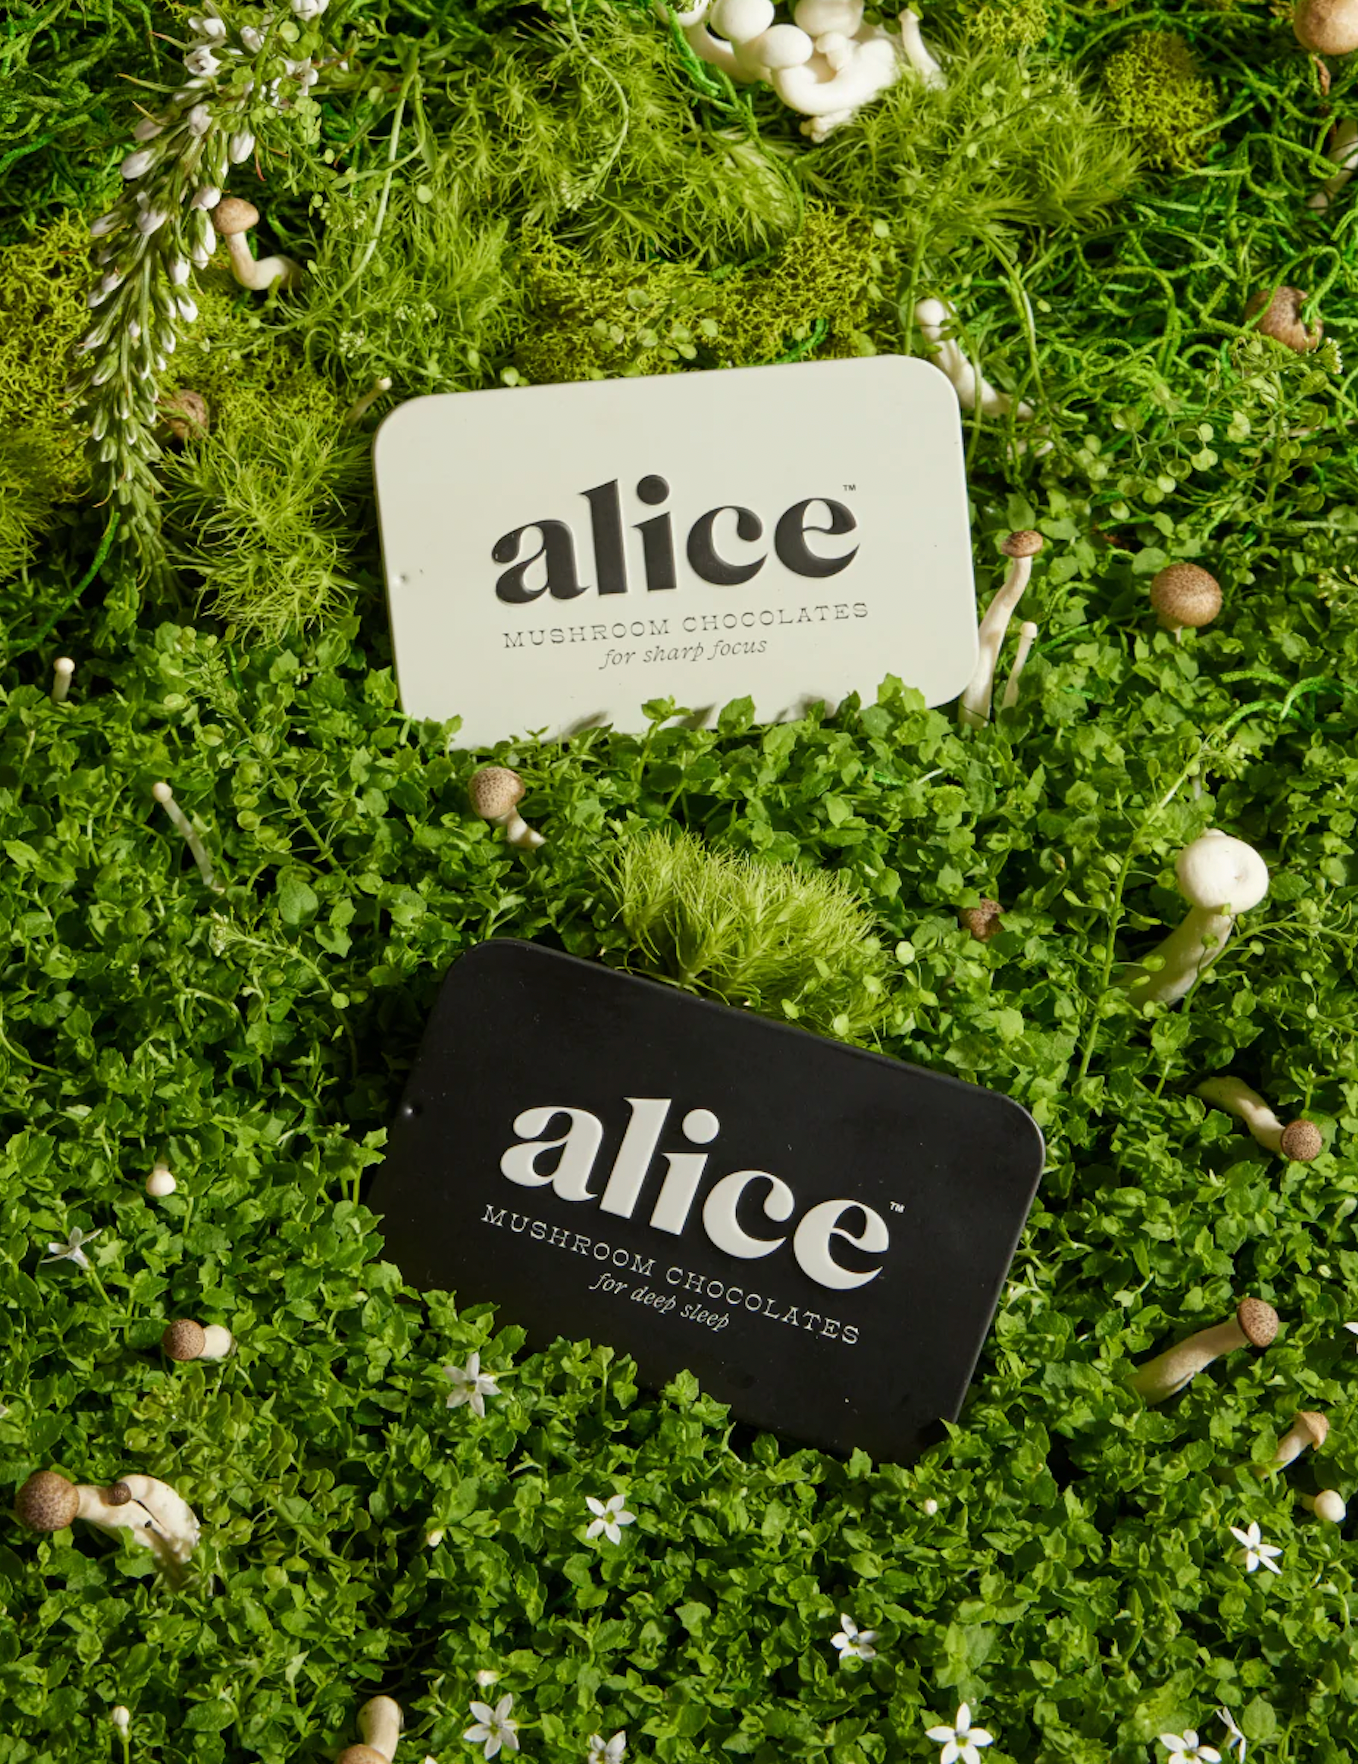 Alice Mushroom Chocolates